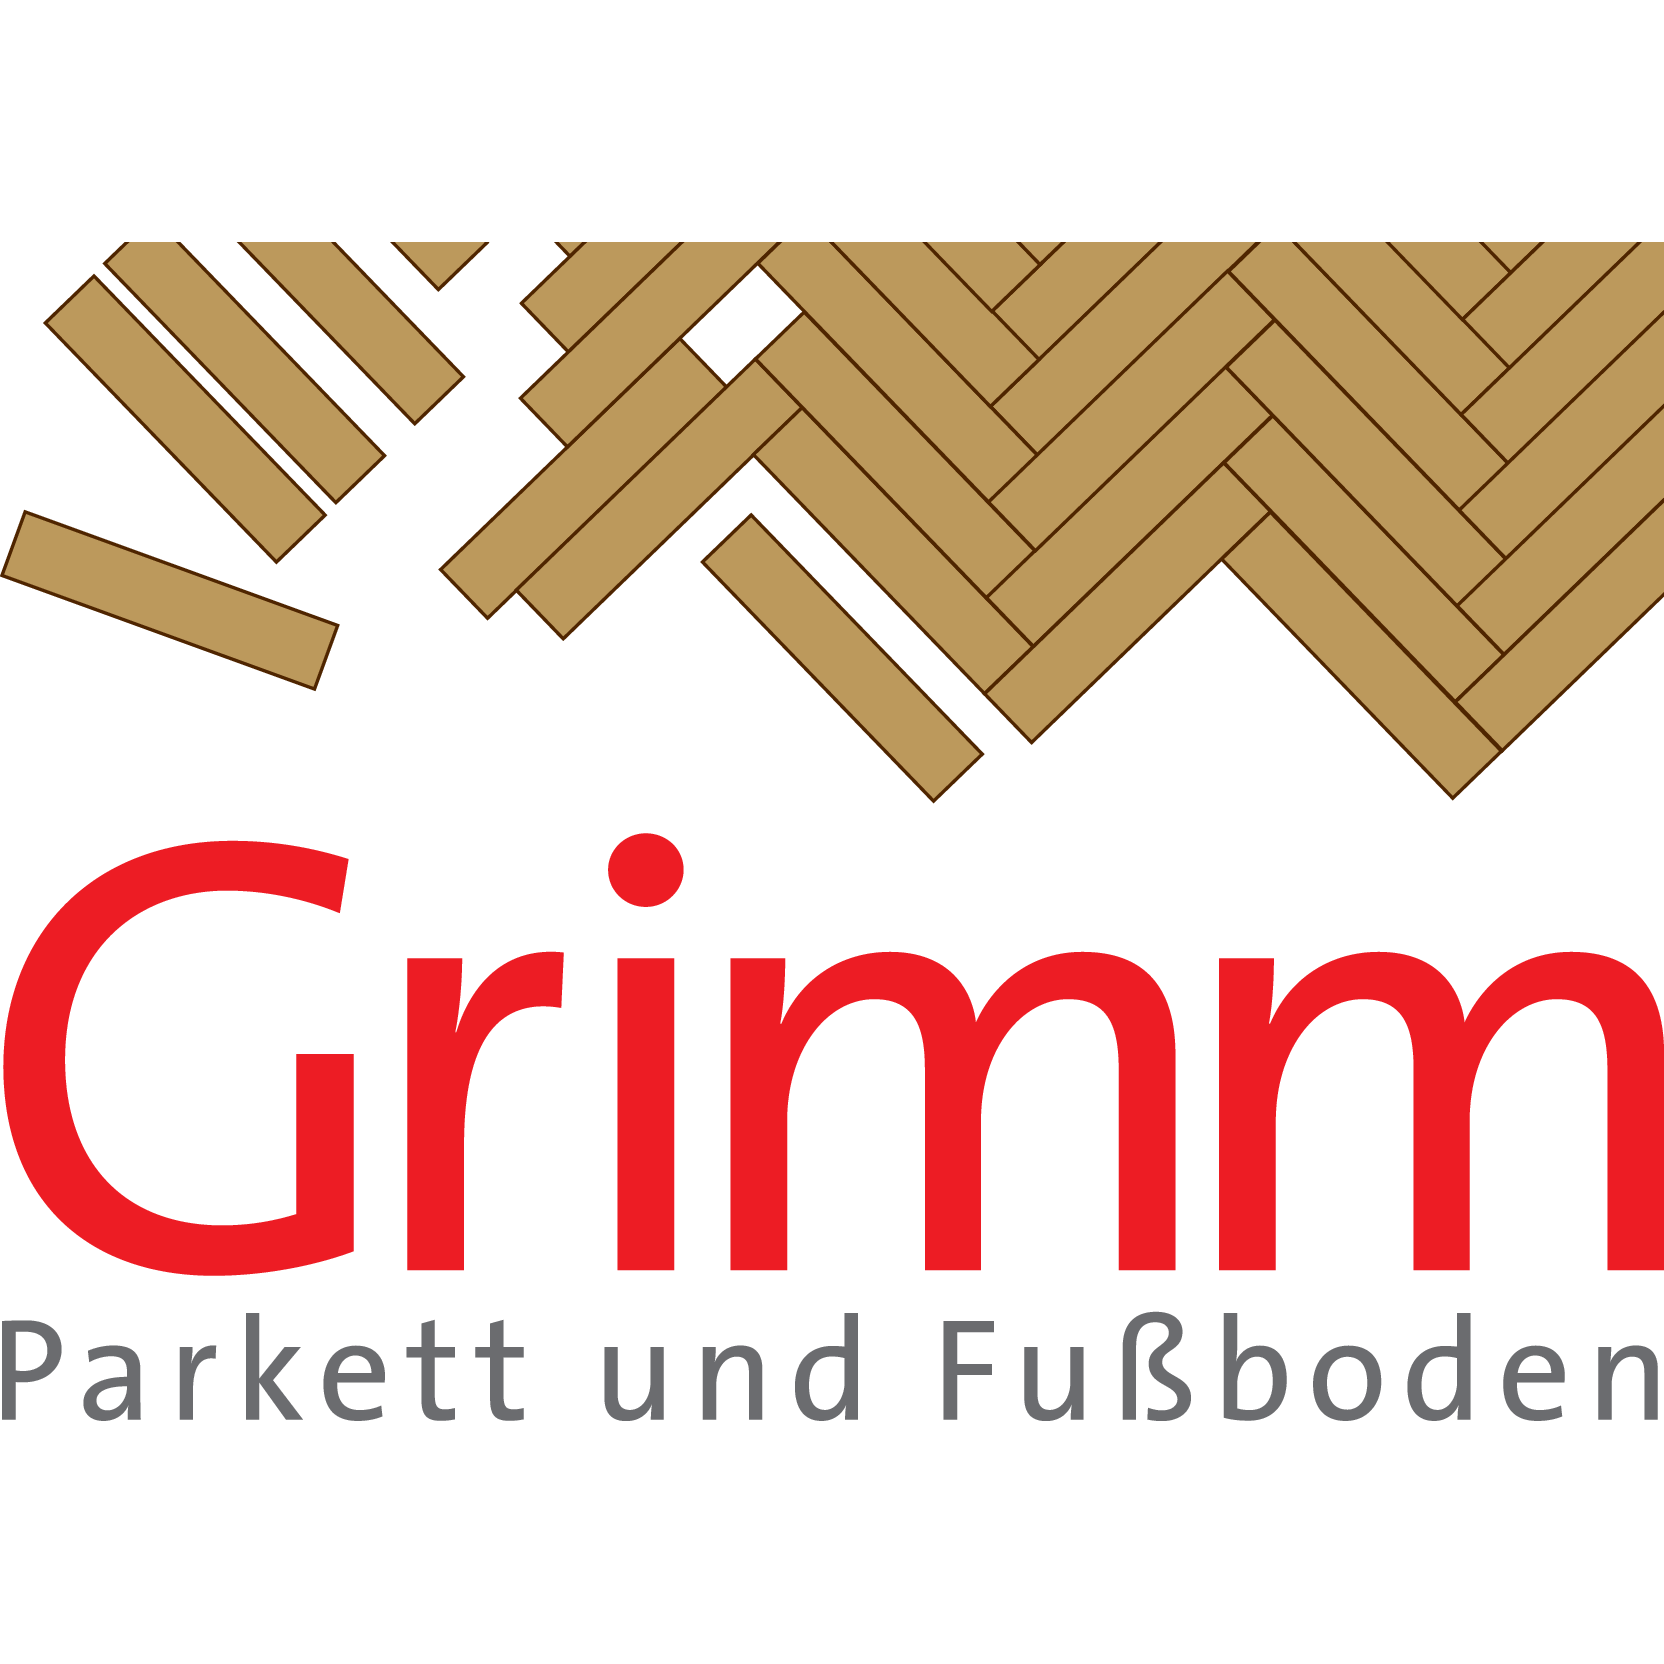 Grimm Parkett- und Fußboden GmbH & Co. KG in Bamberg - Logo